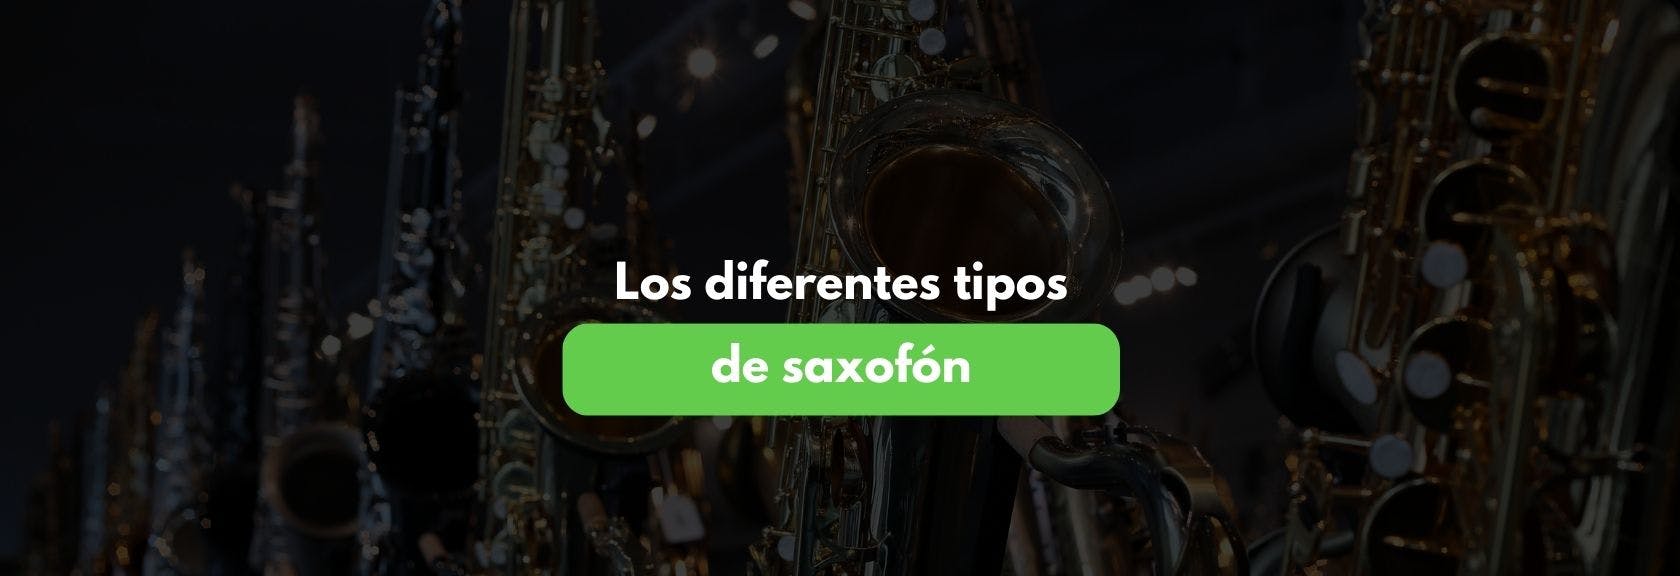 instrumentos-de-viento-saxofones